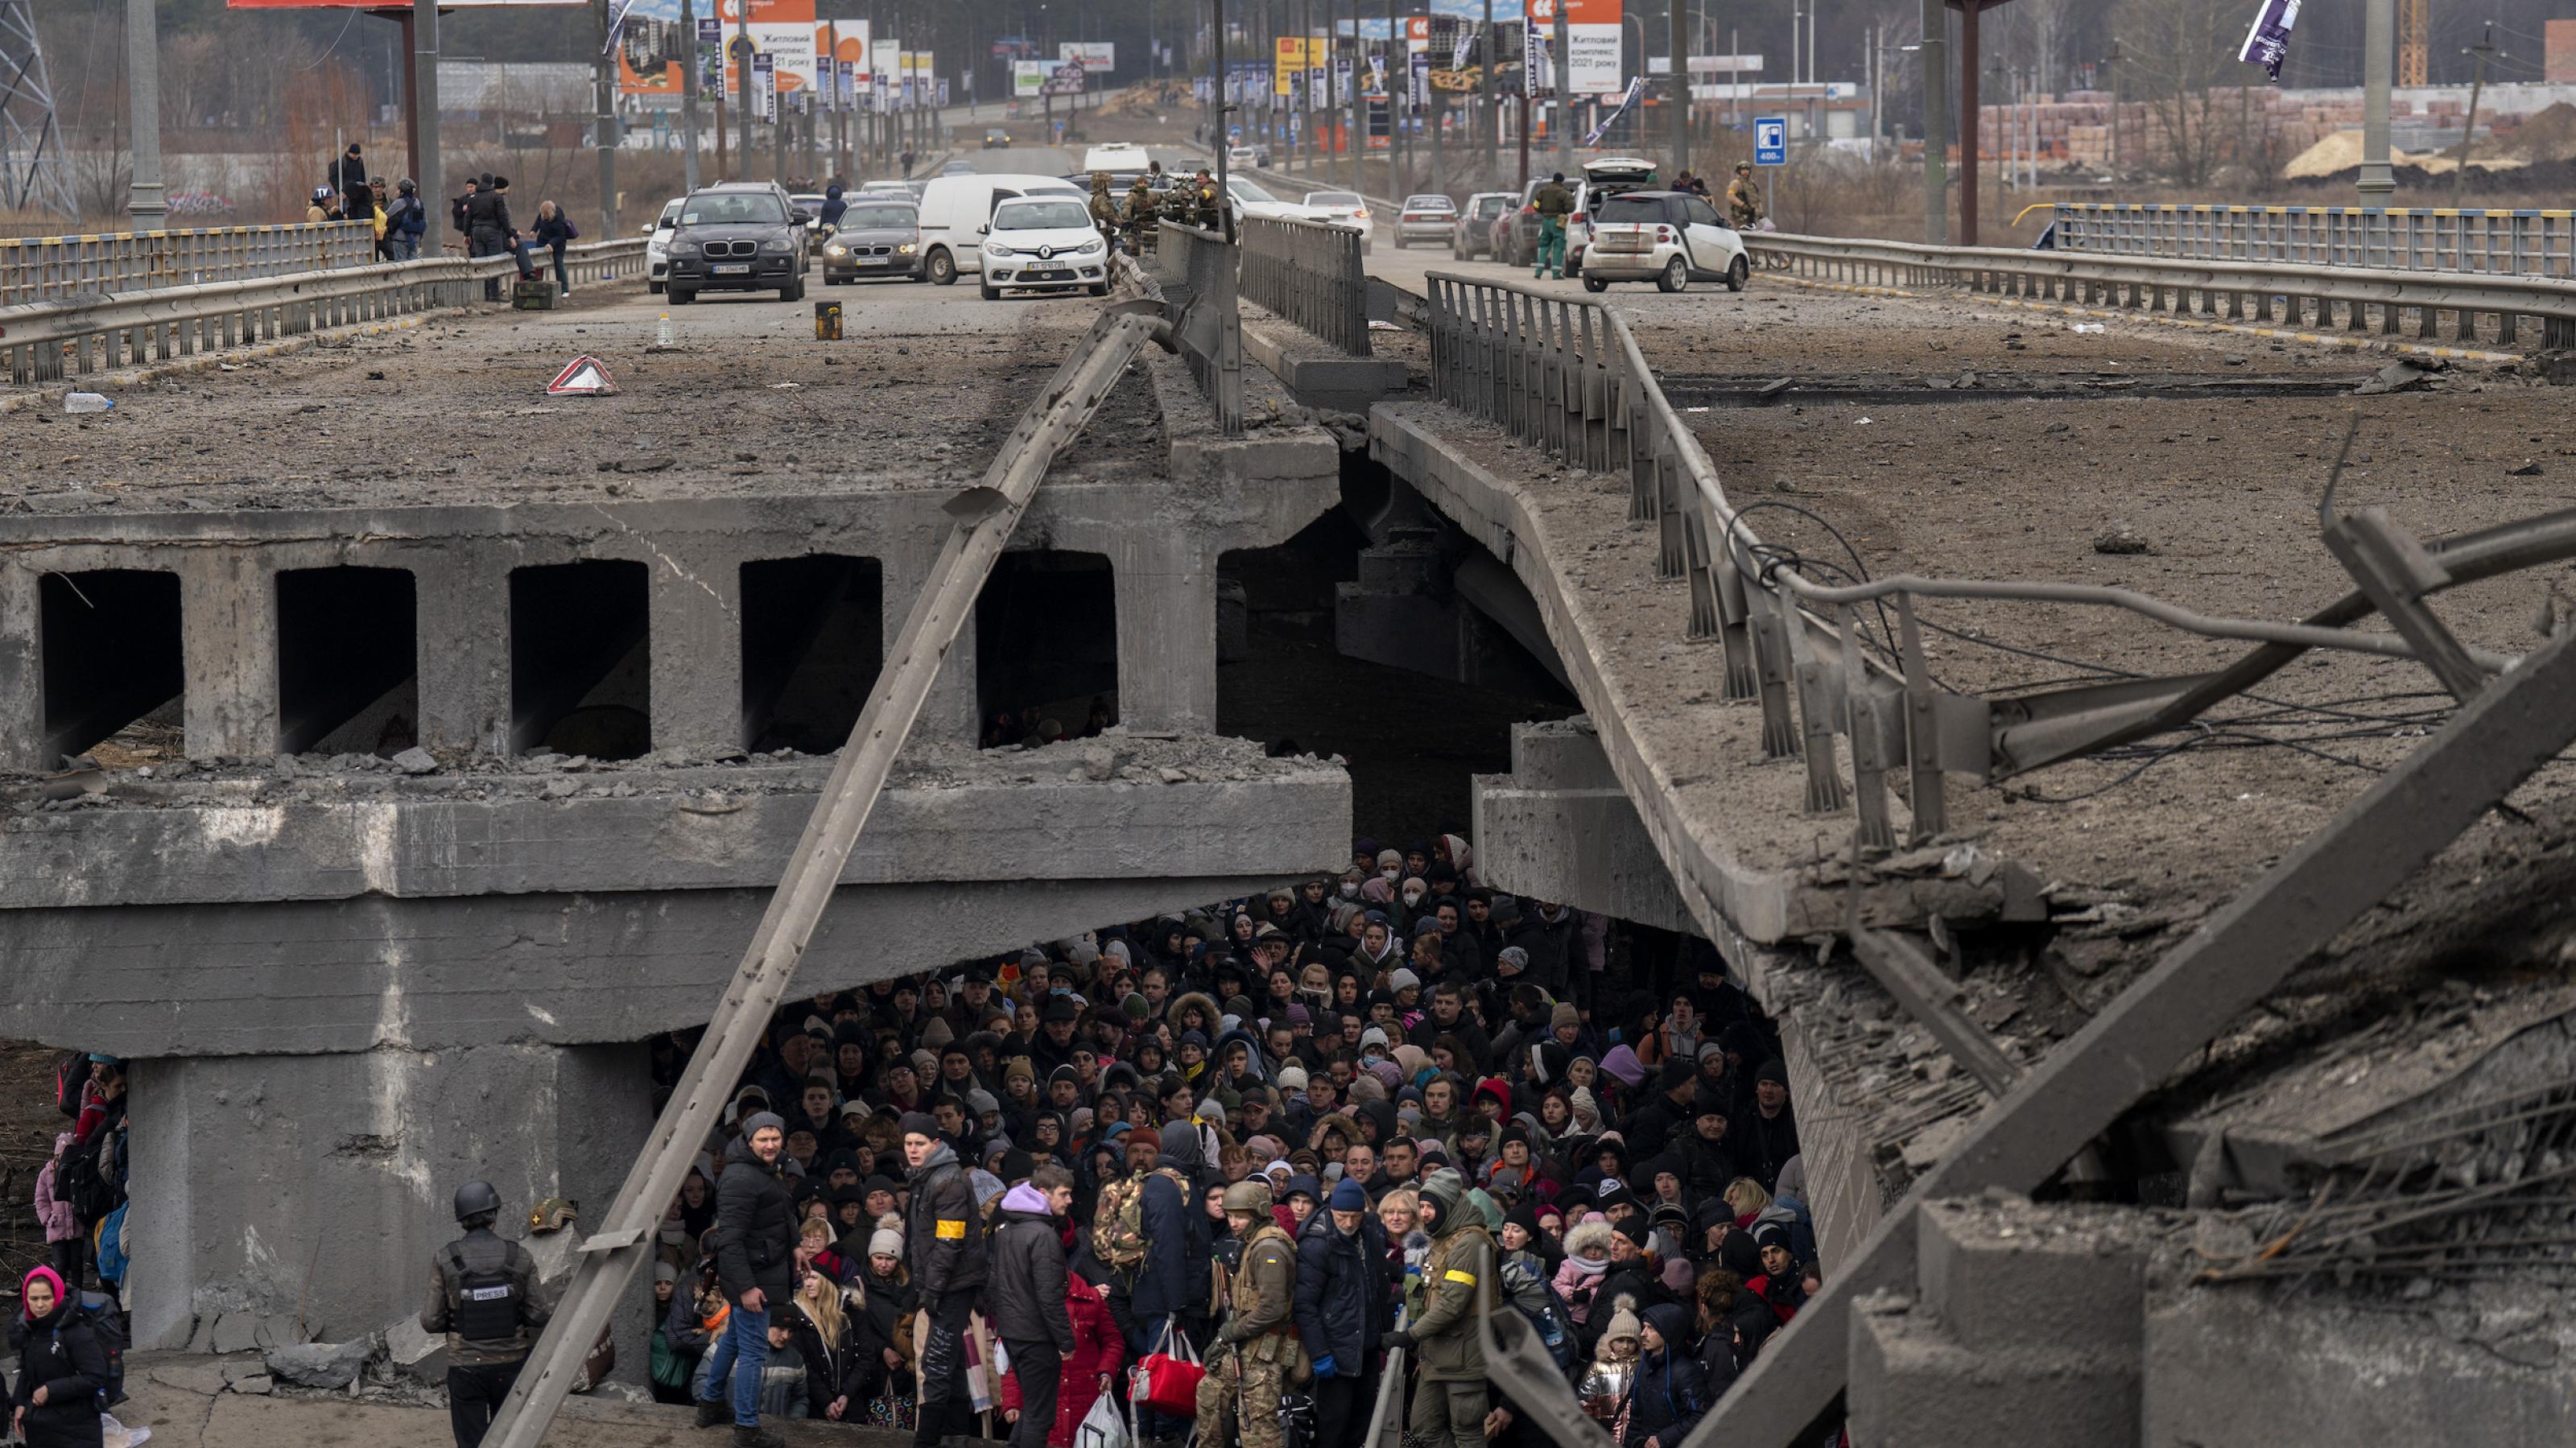 Im Dunkel unter der zerstörten Brücke wartet eine Menschenmenge, bewacht von zwei ukrainischen Soldaten.